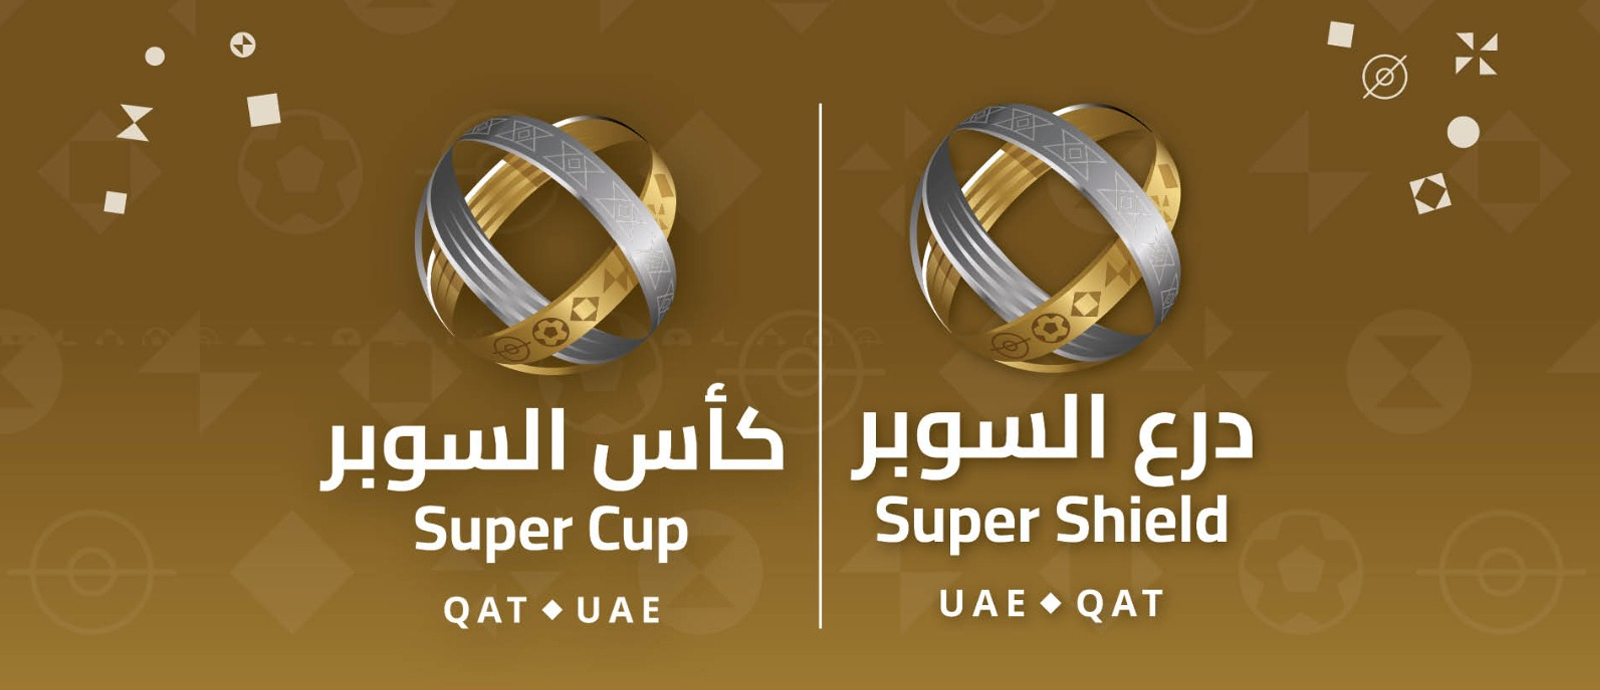  Qatar-UAE Super Cup